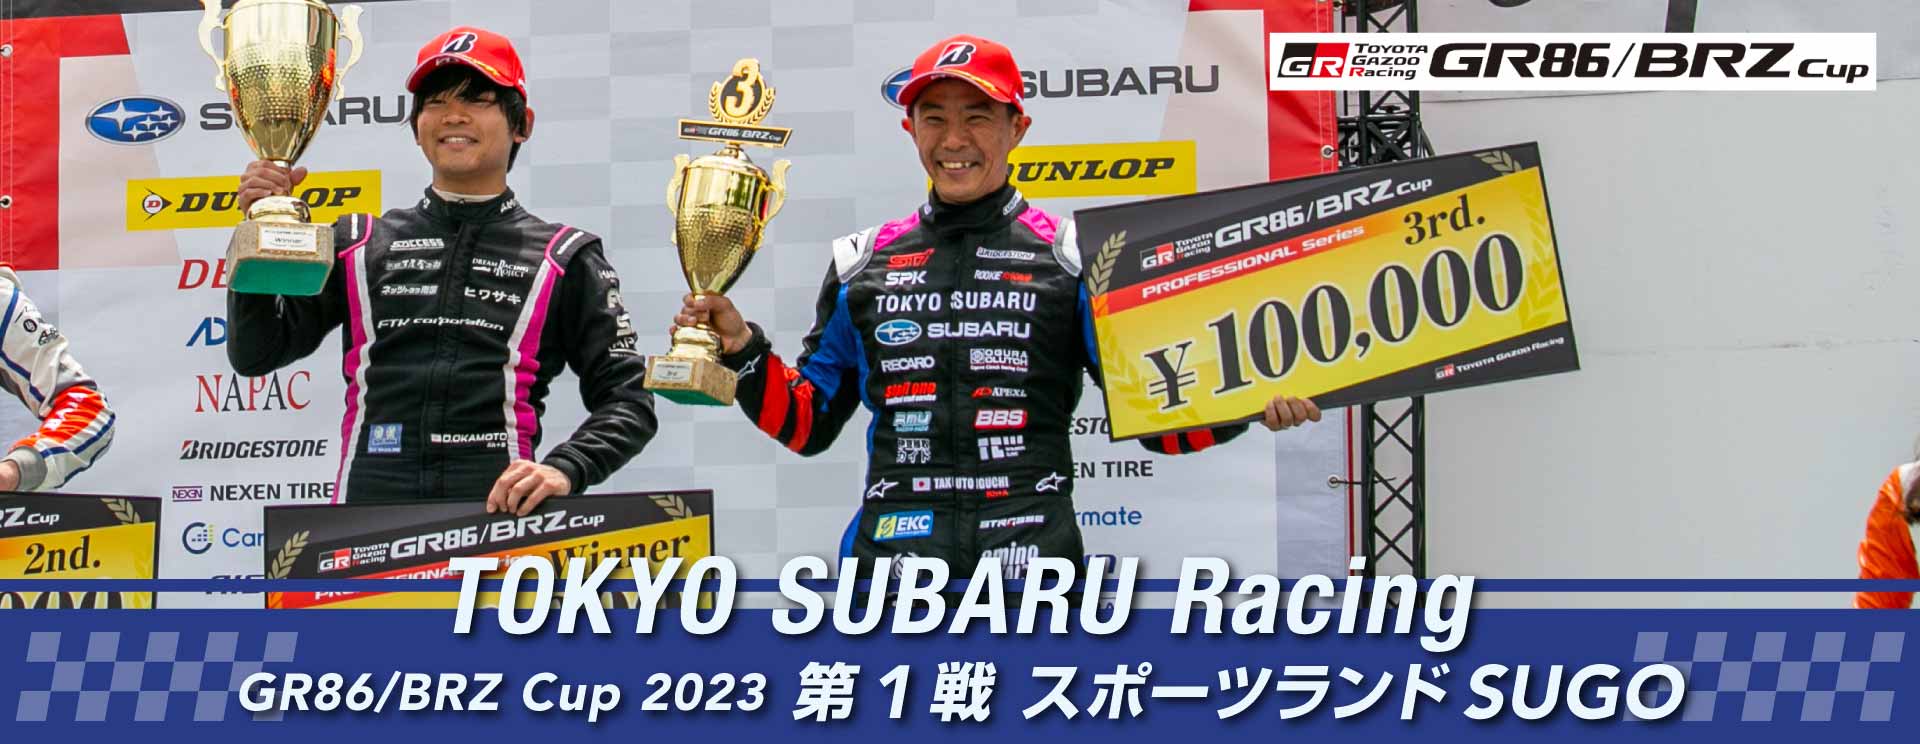 東京スバル TOKYO SUBARU Racing GR86/BRZ Cup2023 第1戦 スポーツランドSUGO